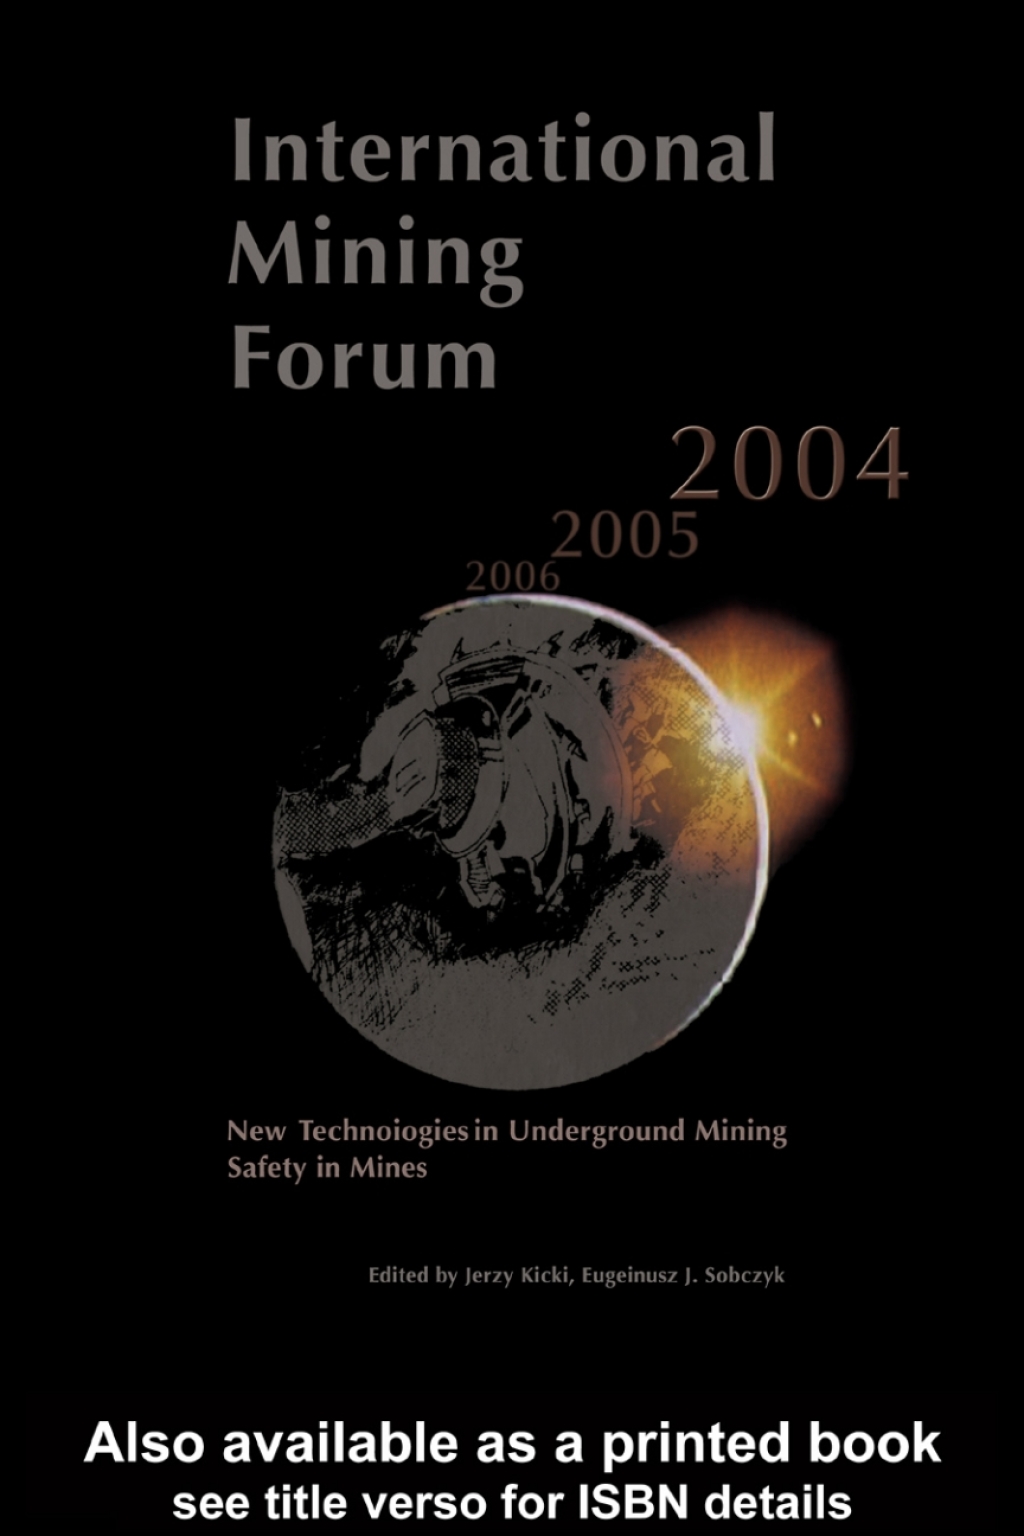 International Mining Forum 2004, New Technologies in Underground Mining, Safety in Mines